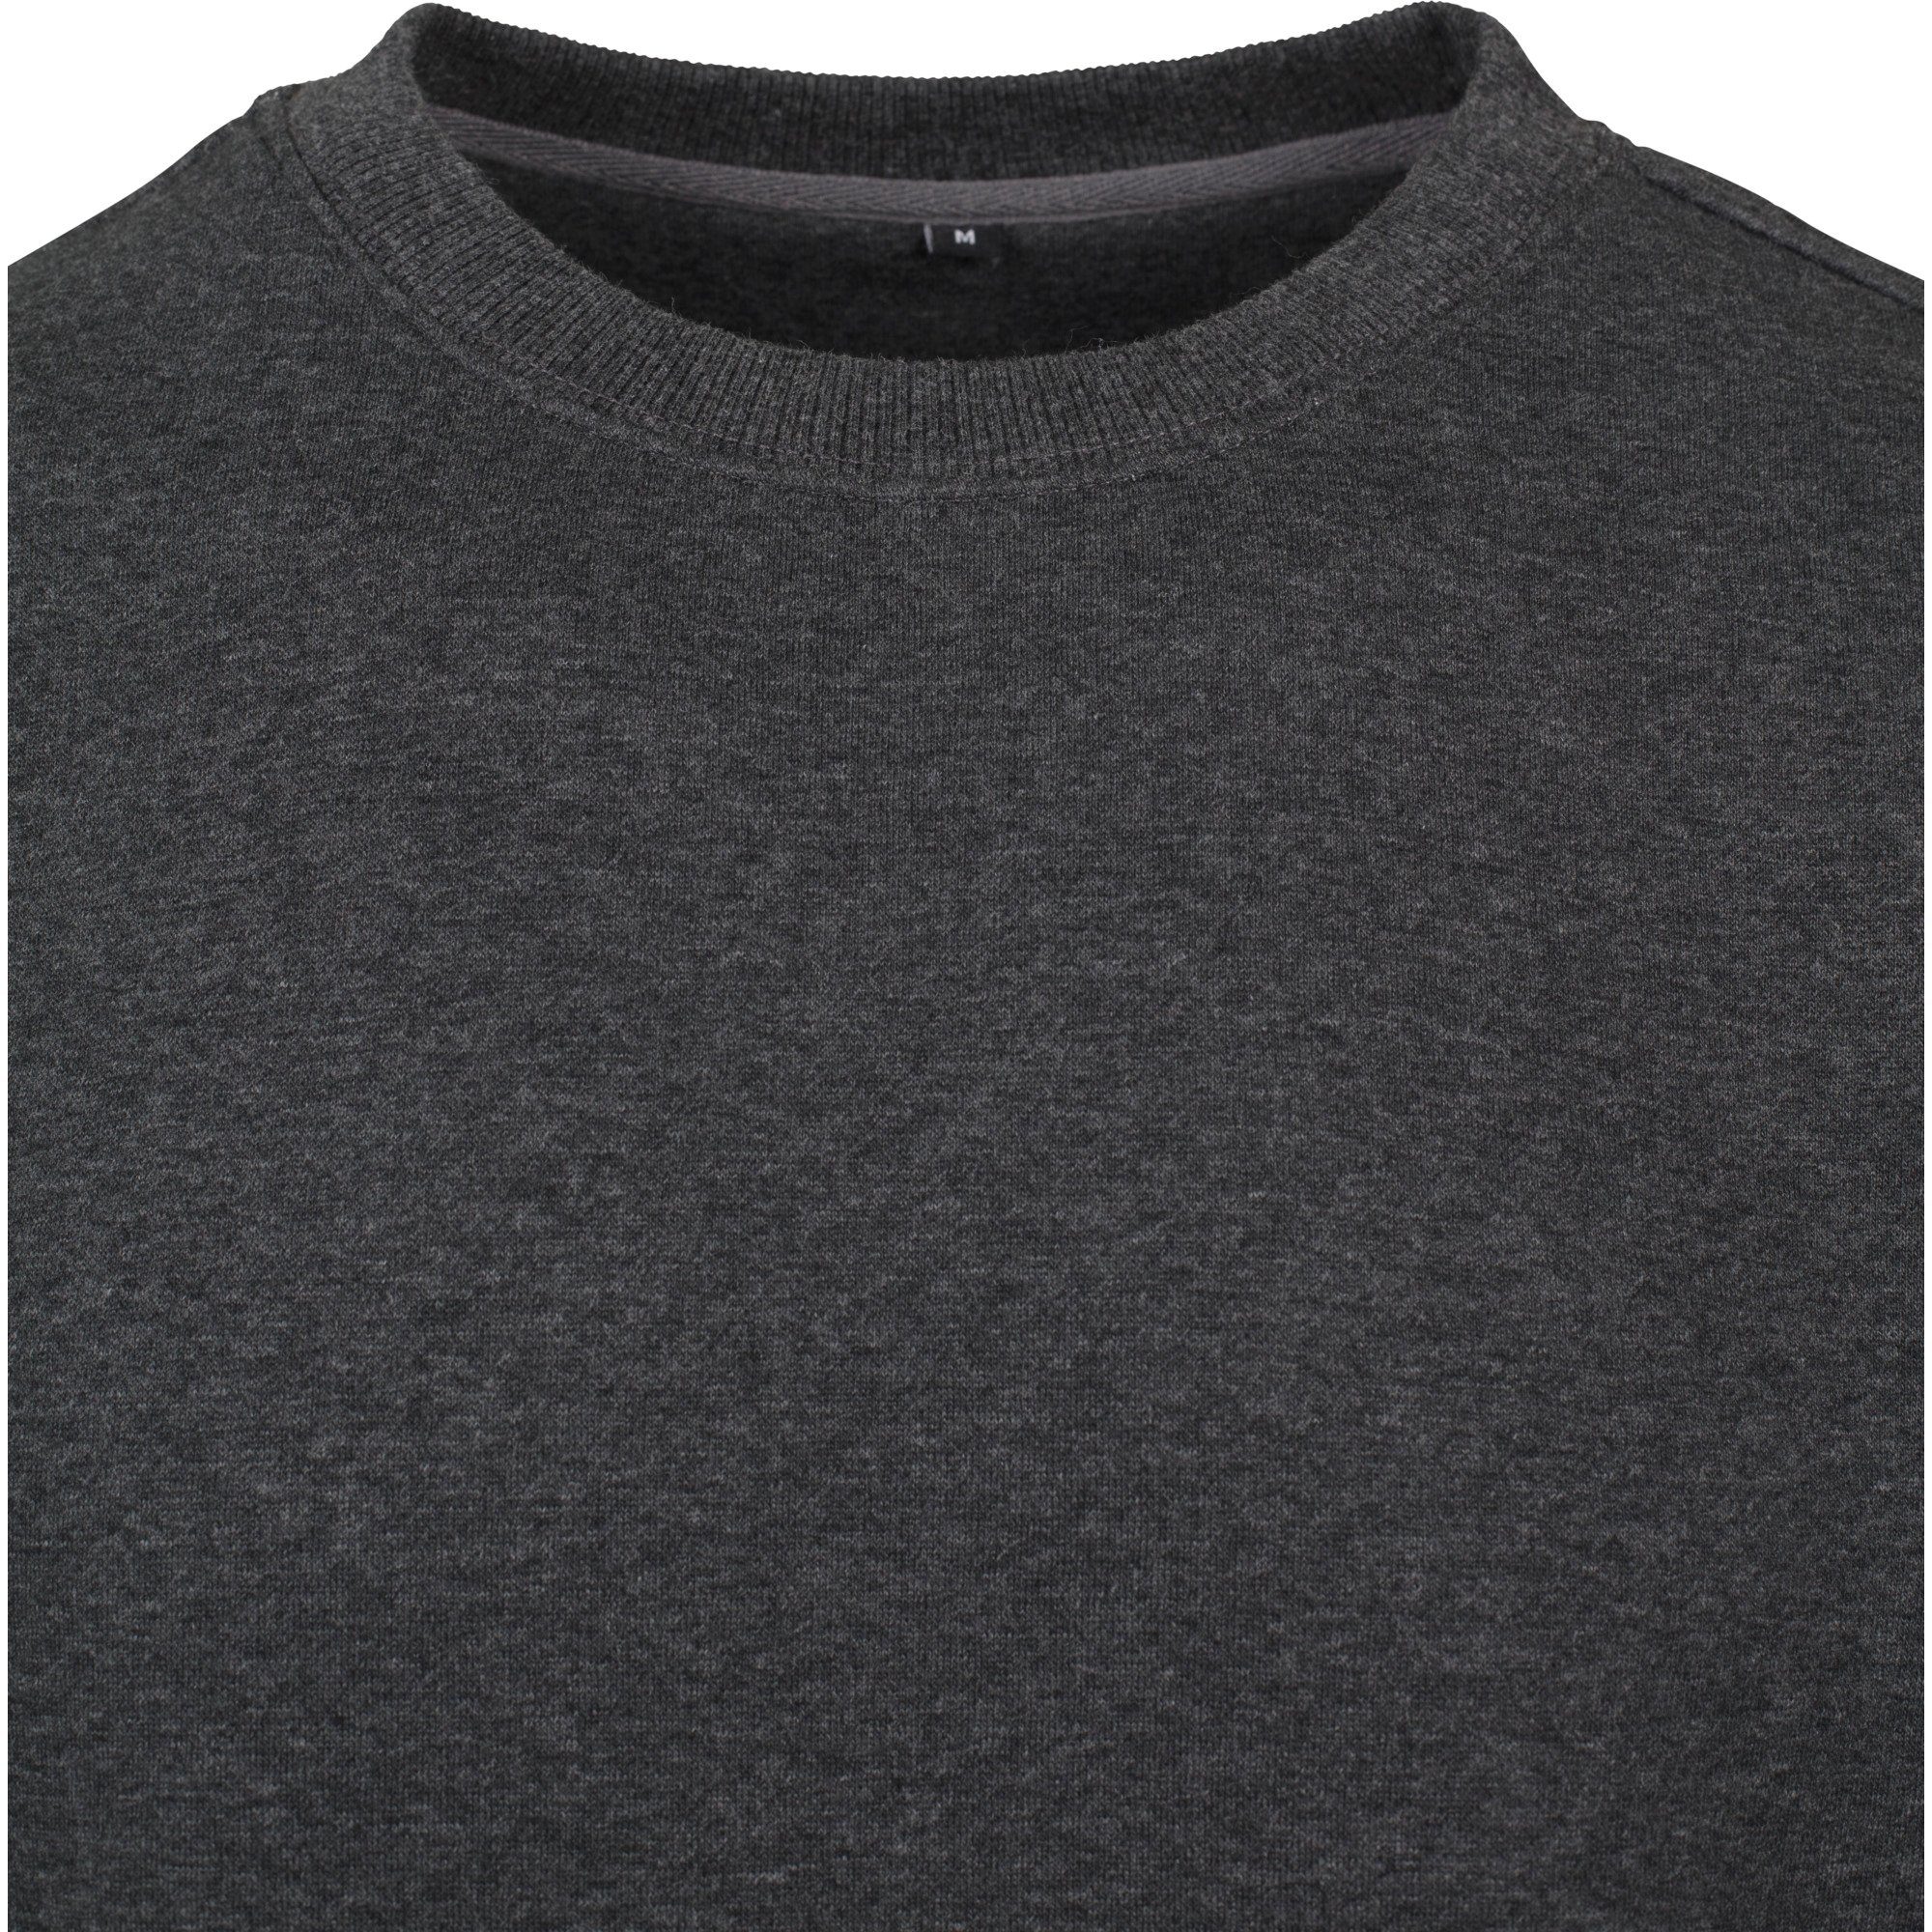 Build Your S Herren bis Crewneck Brand Pullover schwerer anthrazit 5XL Sweater Sweatshirt